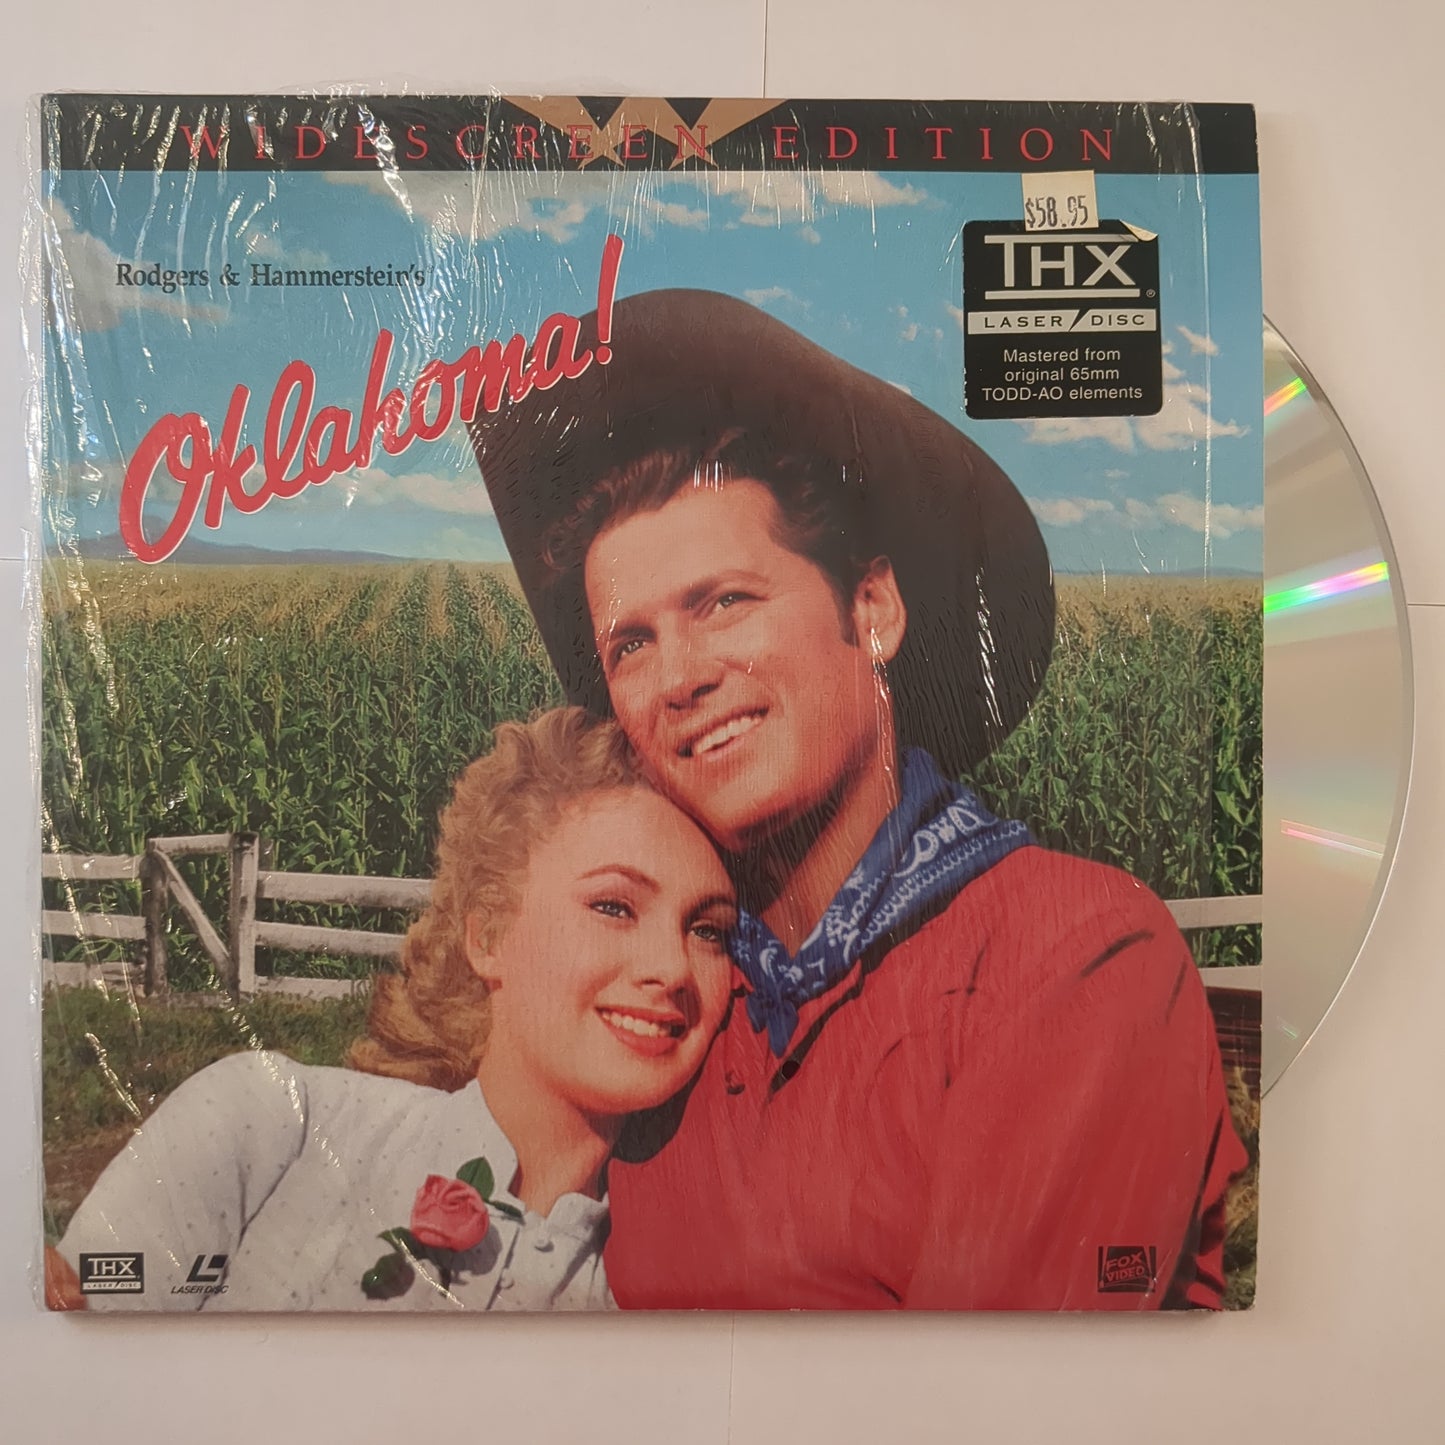 'Oklahoma!'